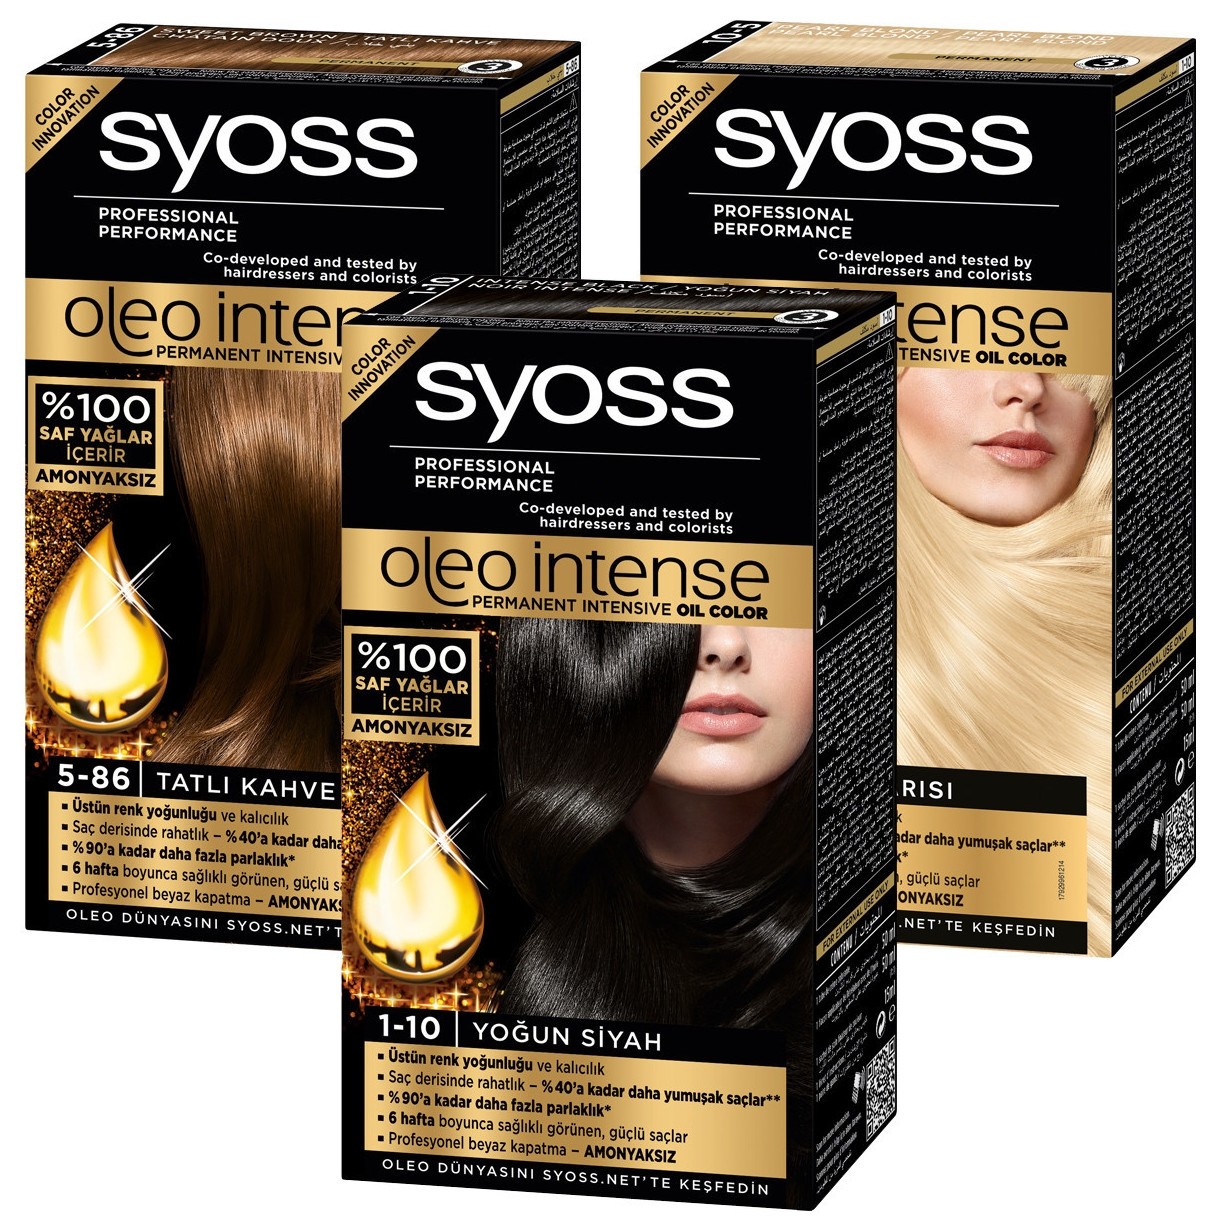 Краска для волос oleo intense 5-10 натуральный каштановый syoss